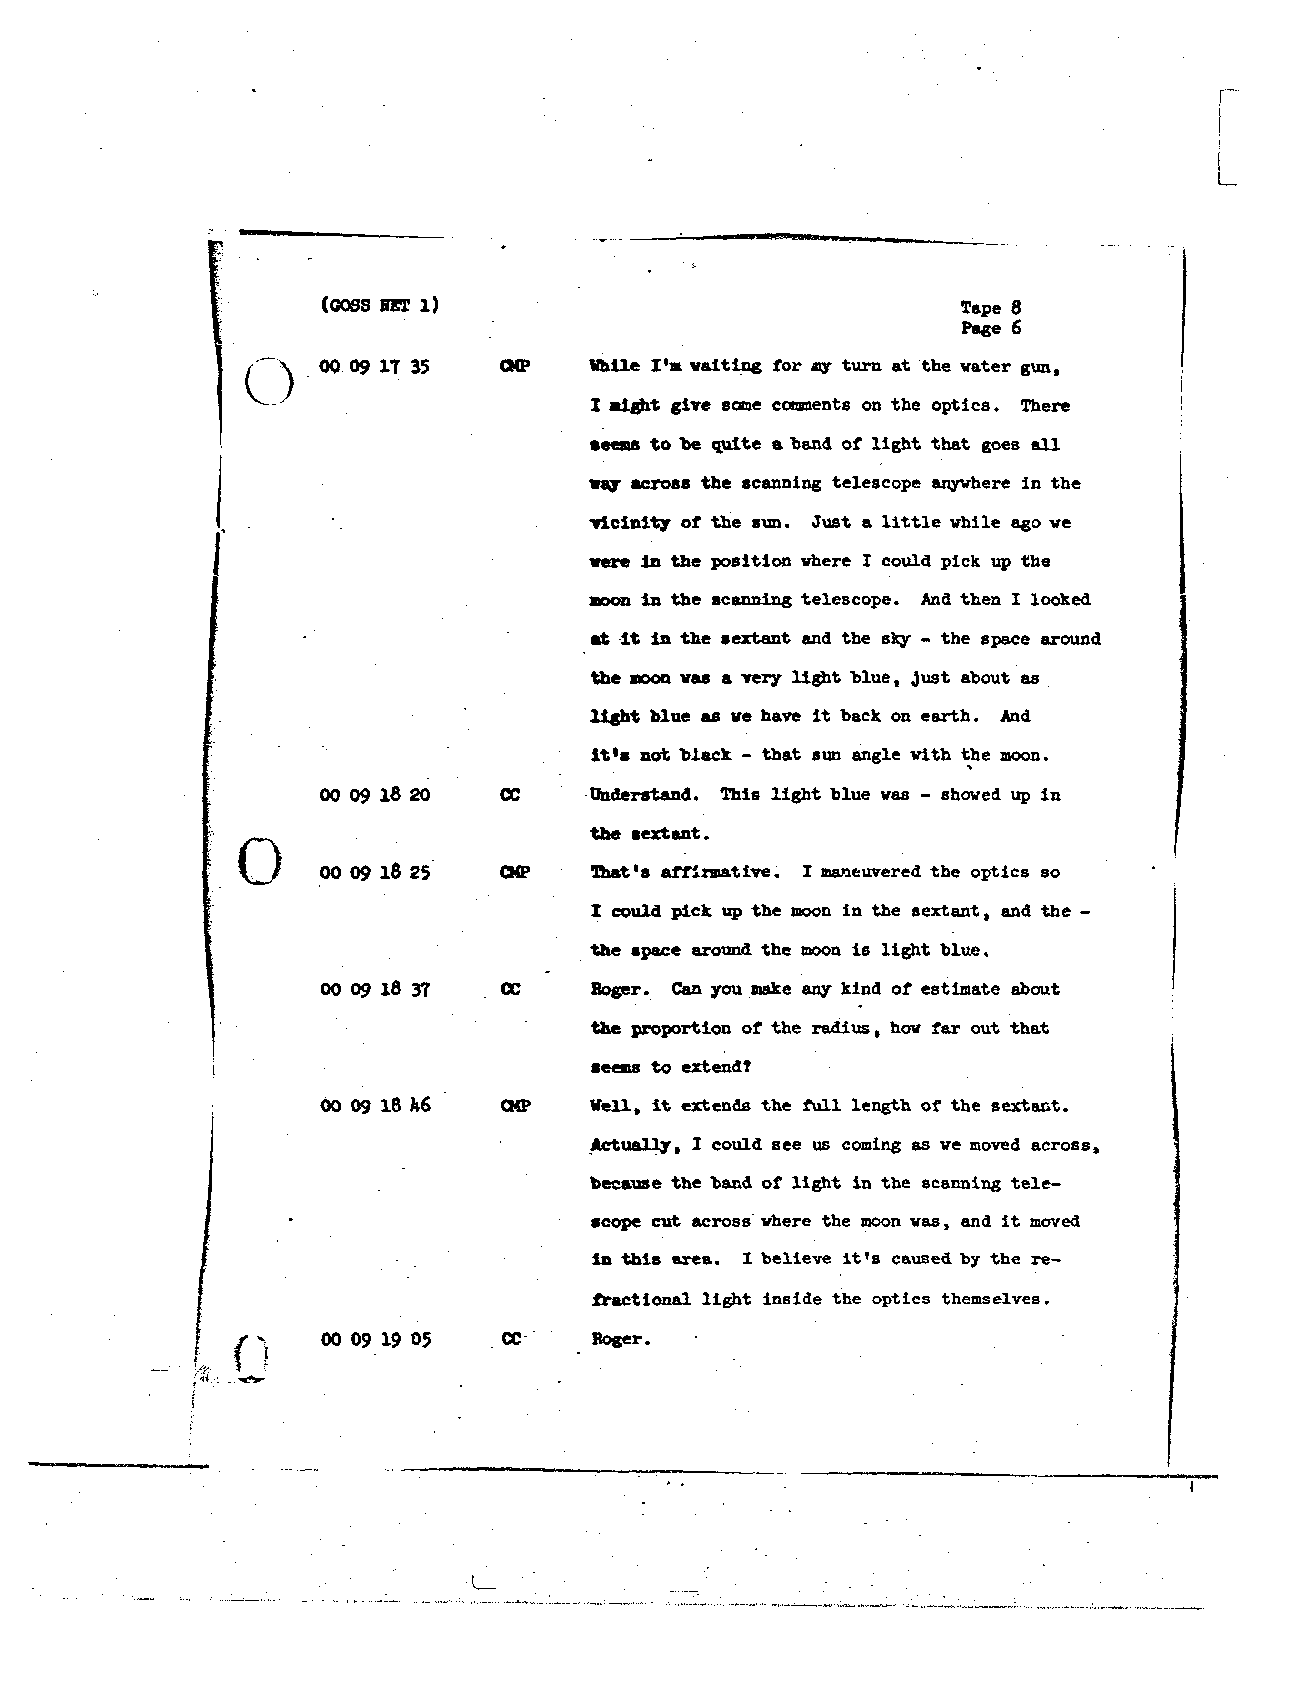 Page 78 of Apollo 8’s original transcript